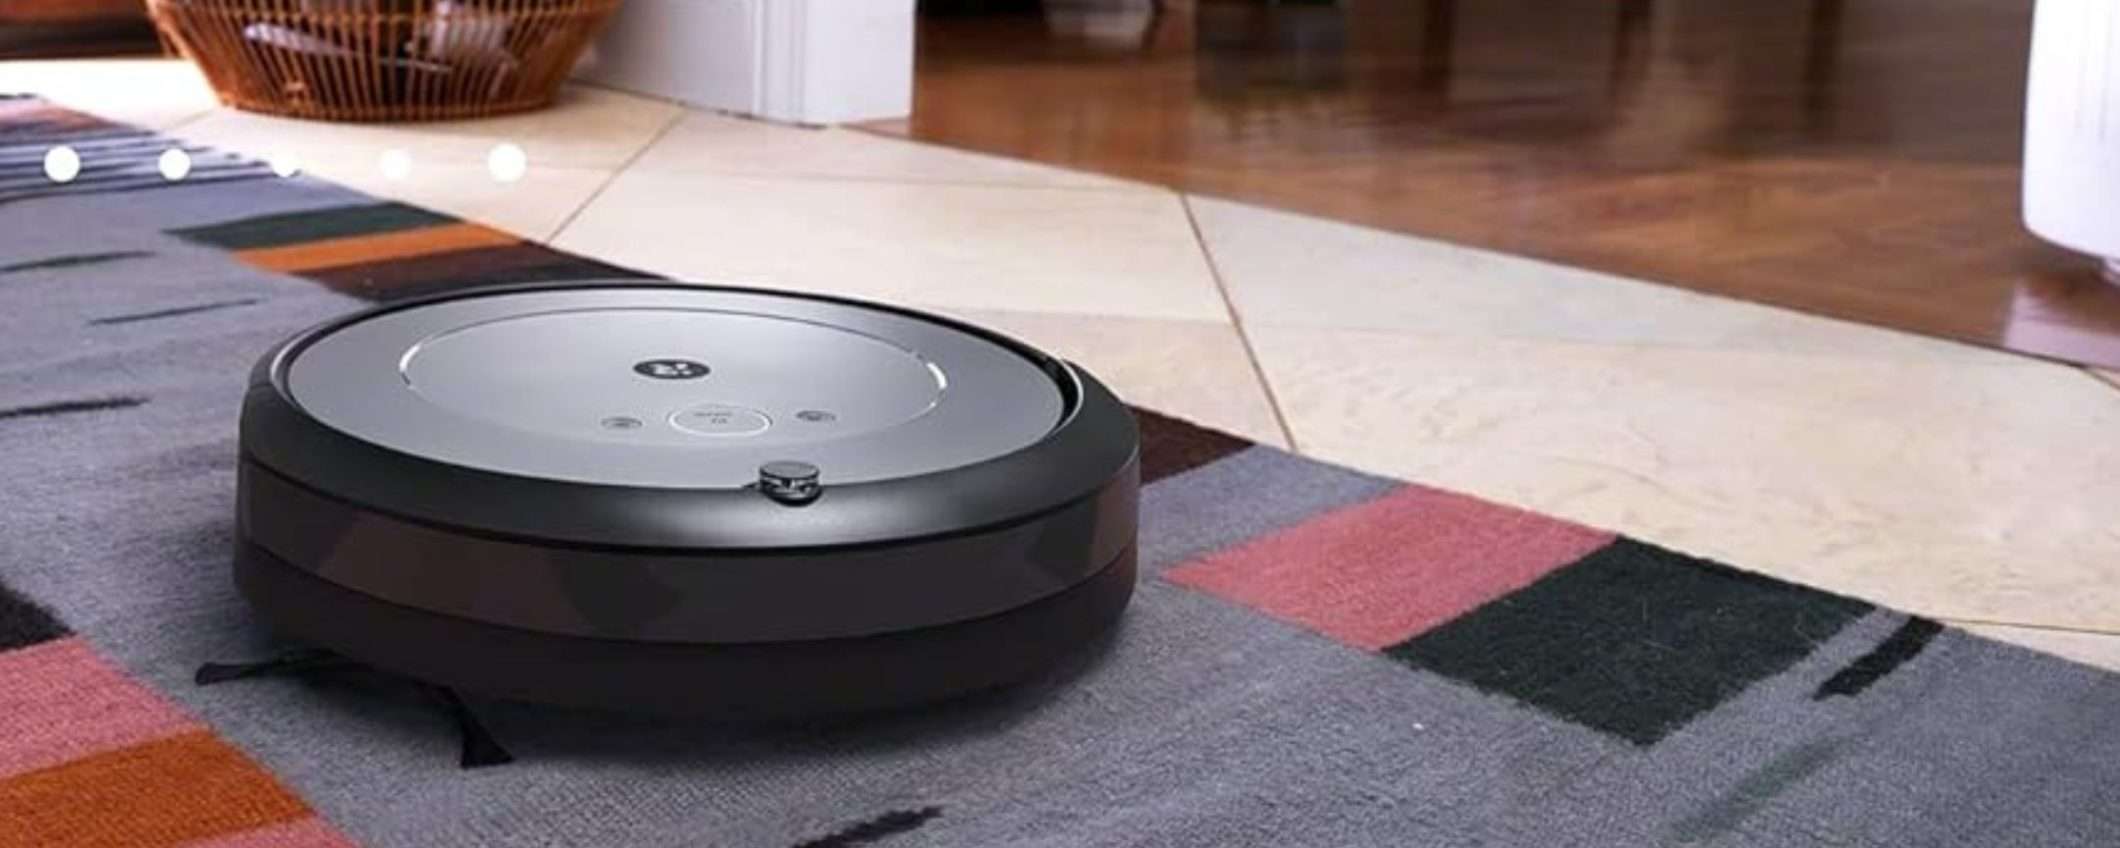 Casa PULITA a 360° con iRobot Roomba i1152, robot aspirapolvere PRO